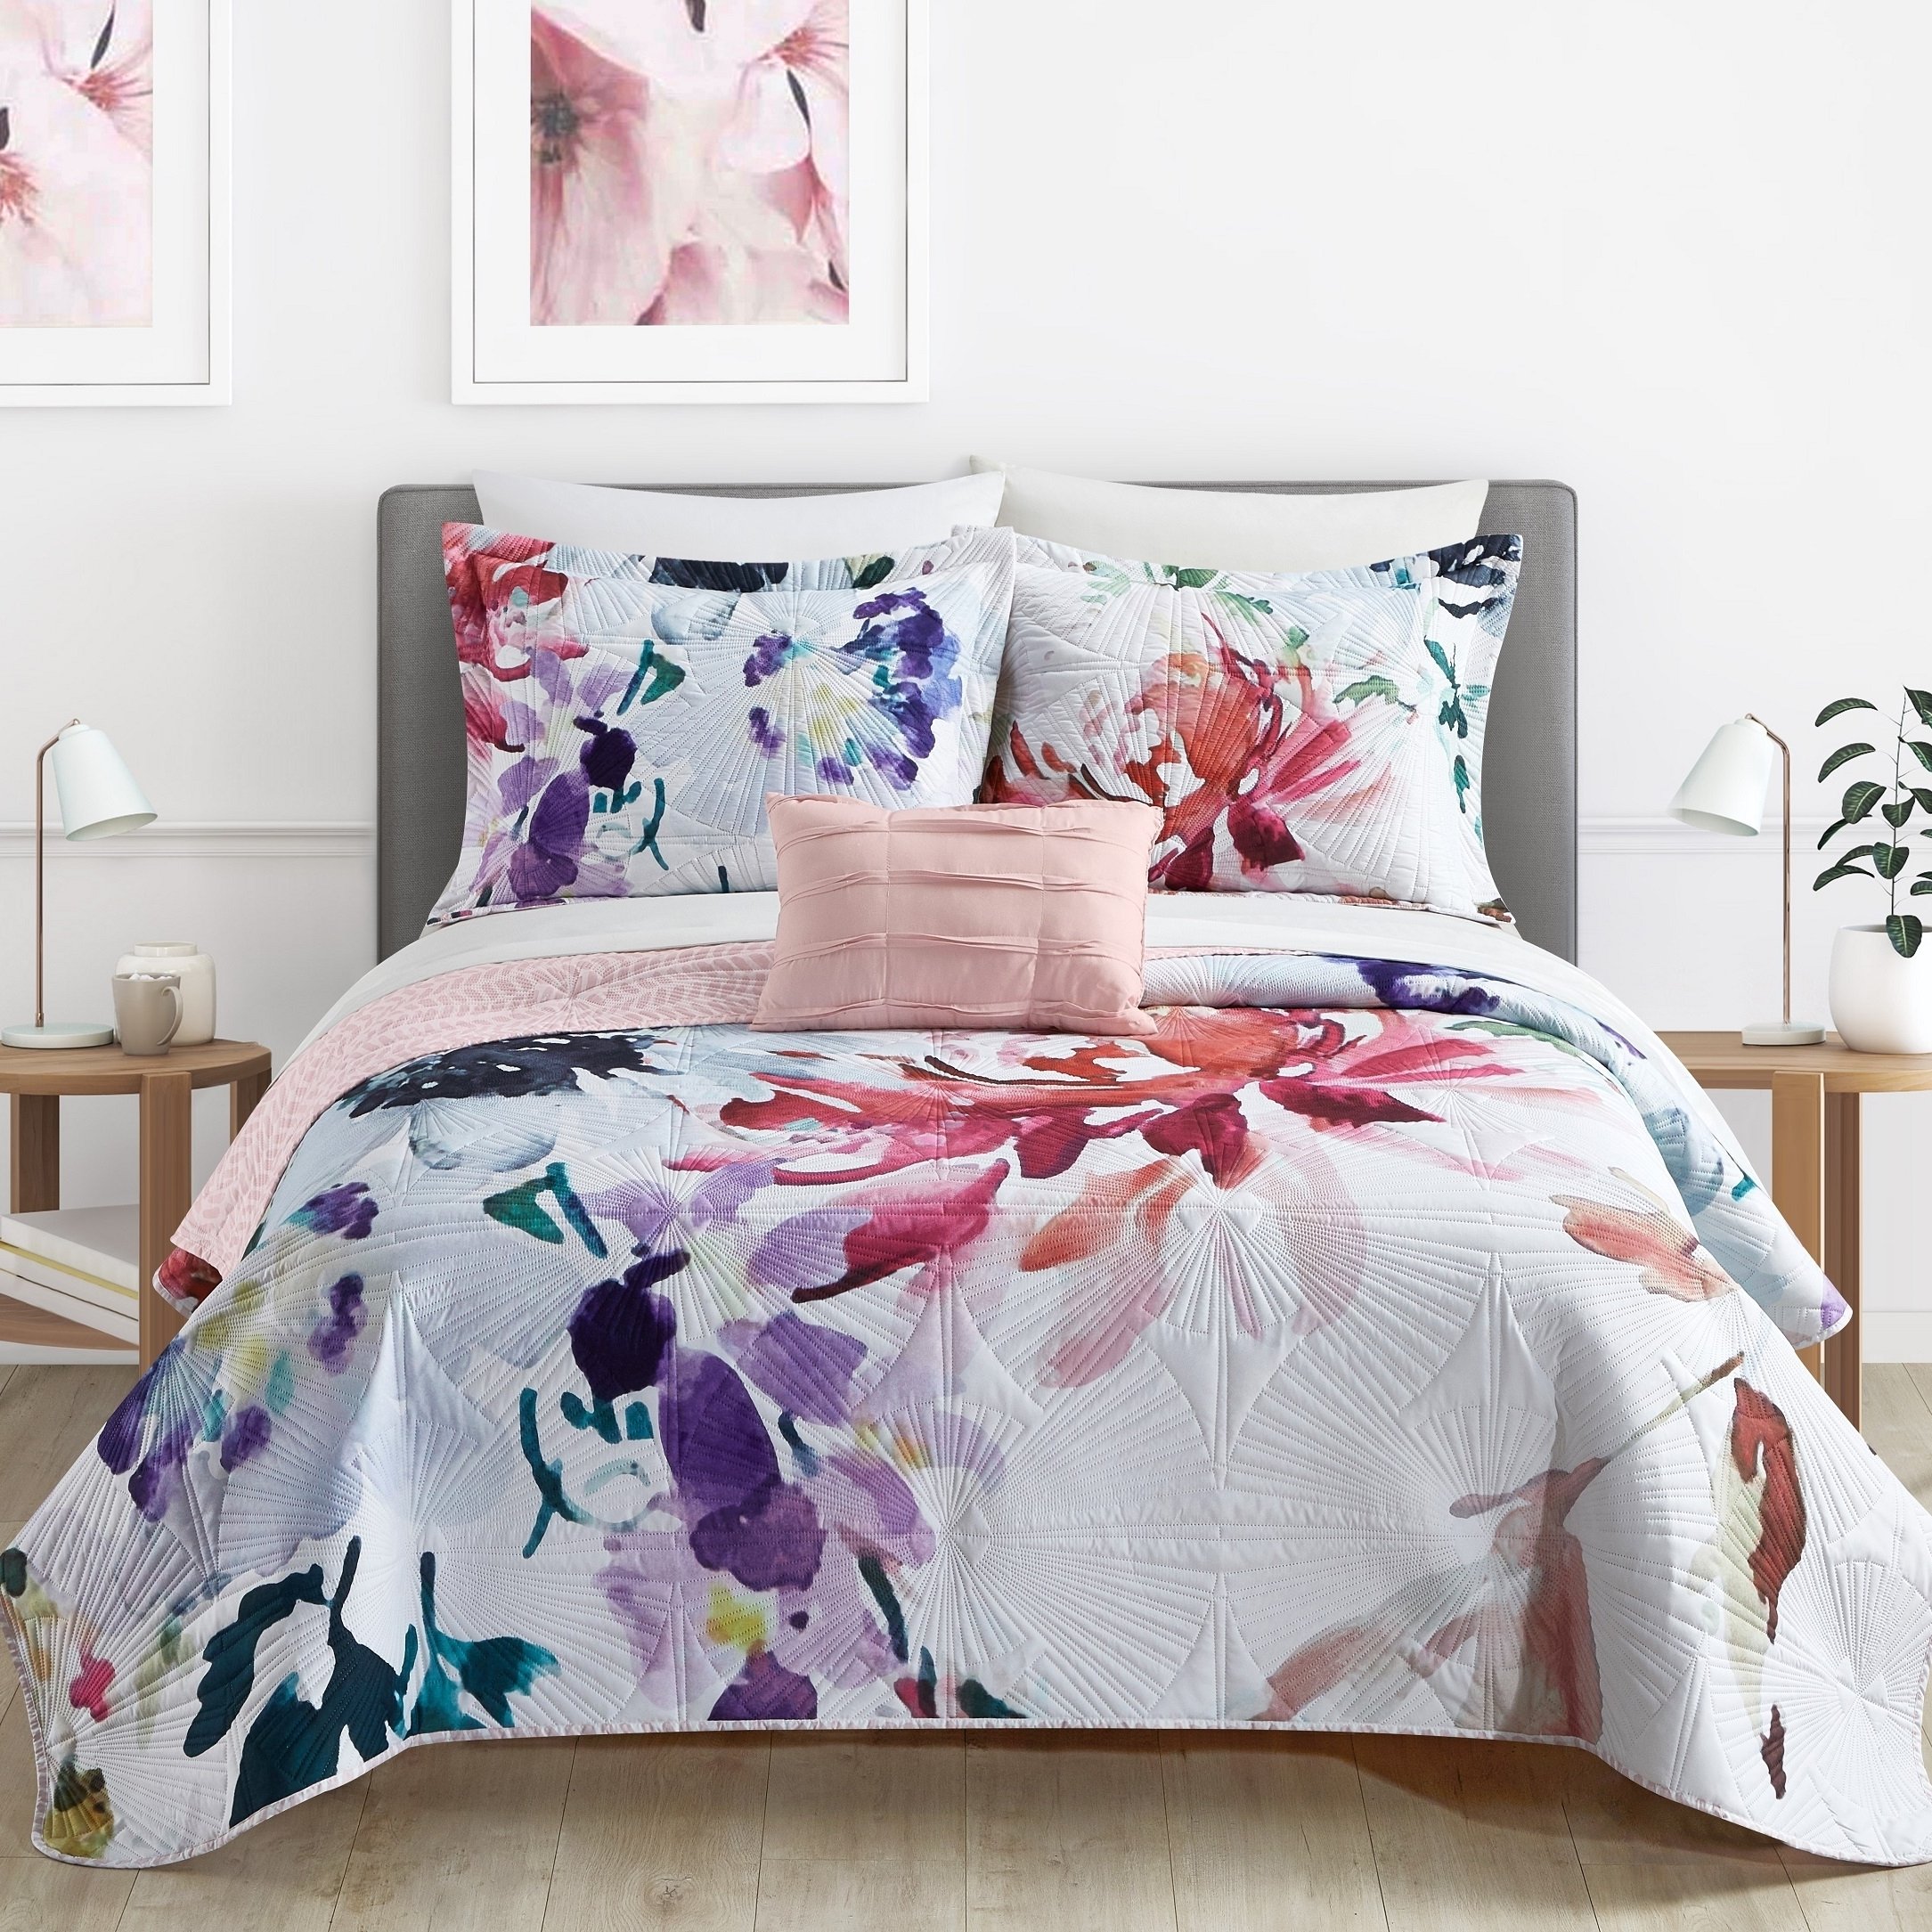 Ateus Palace 3 Or 4Piece Reversible Quilt Set Floral Watercolor Design Bedding - Mateus Purple, Twin (3 Piece)